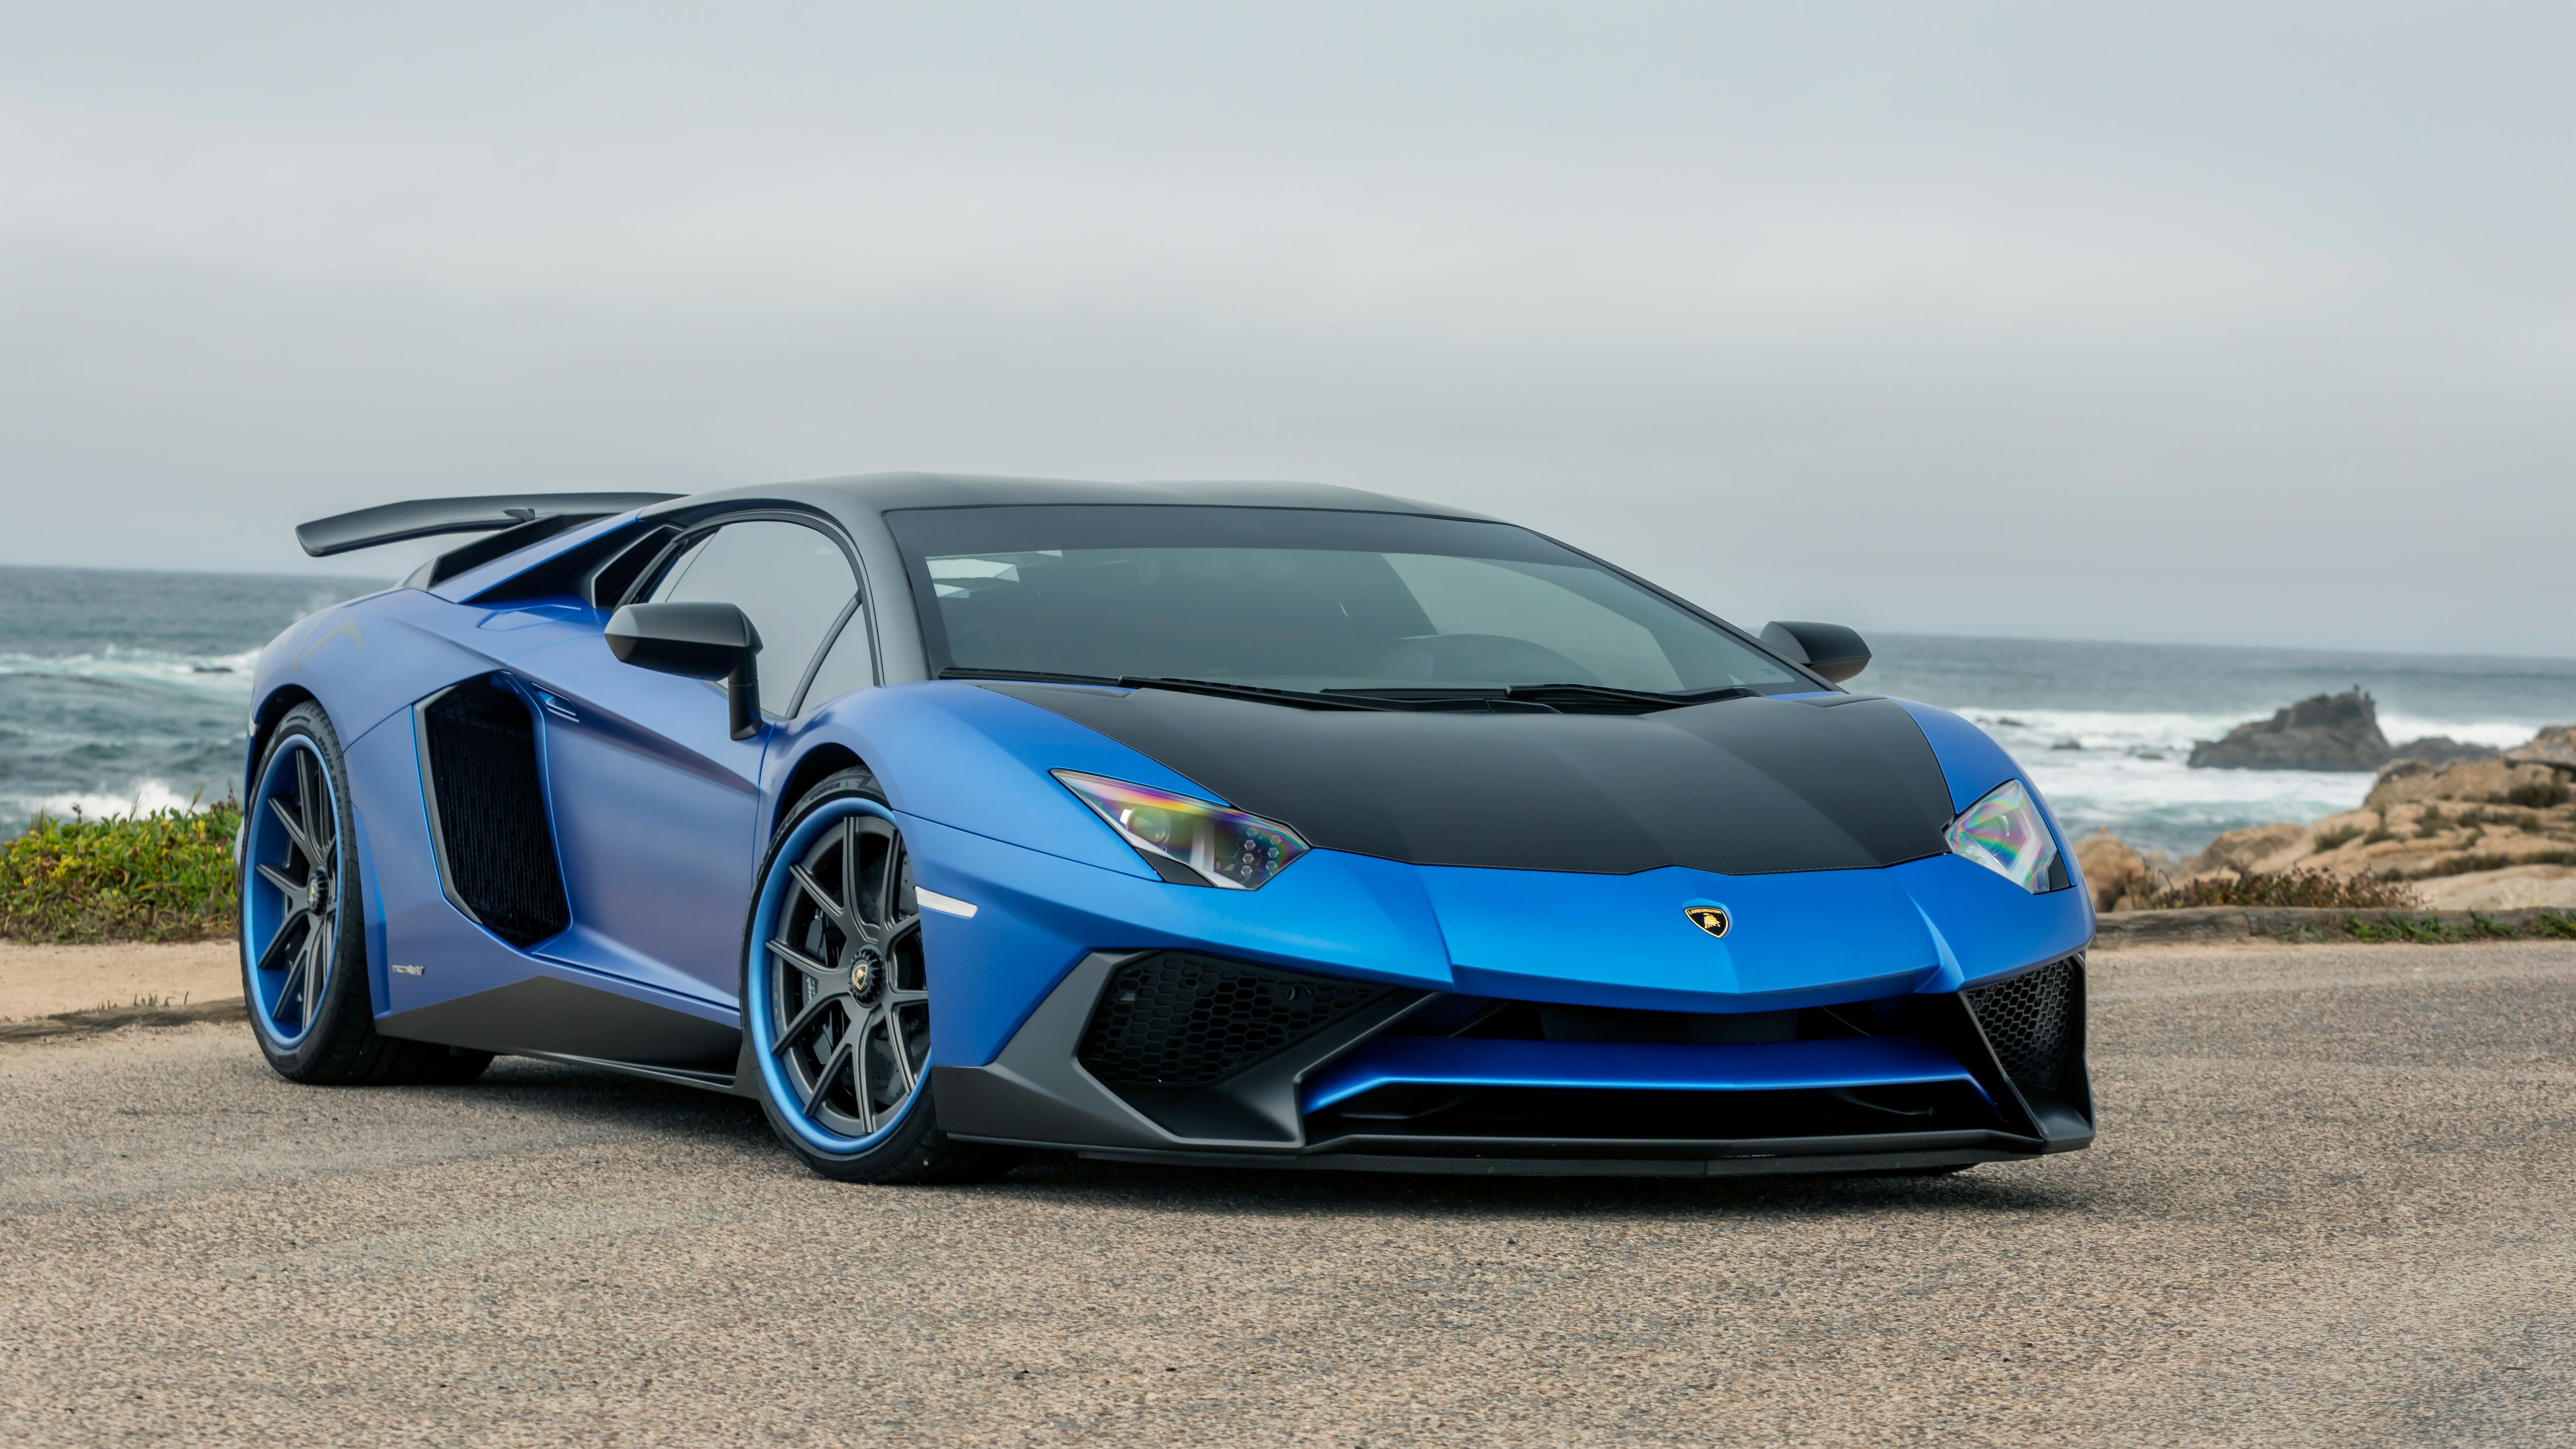 Blue Lamborghini Wallpaper 1080p Cool Whips